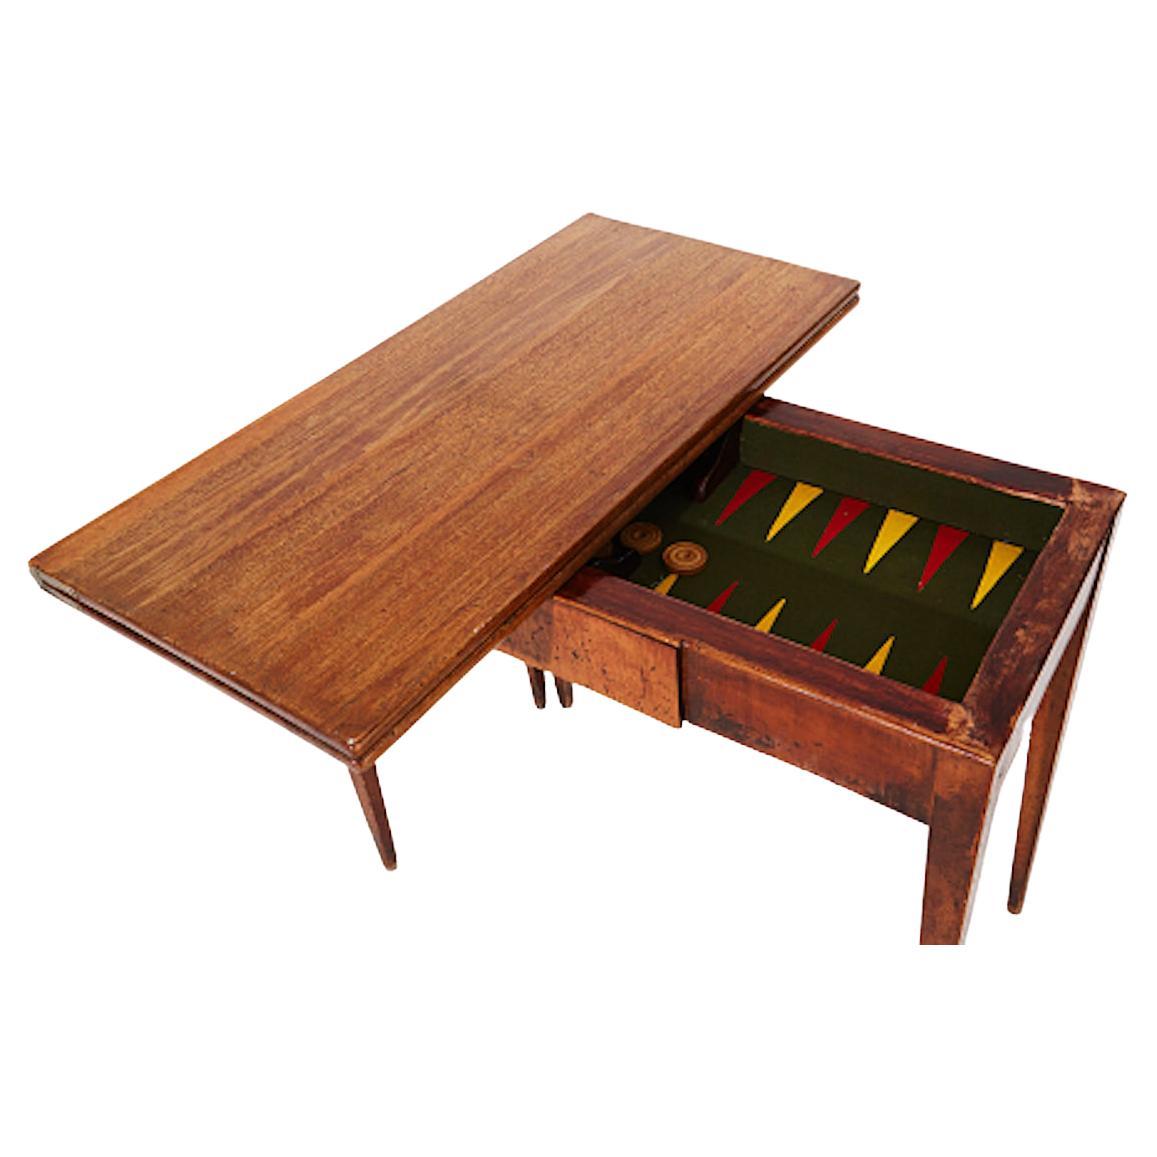 Table de jeu en acajou de la fin de la période gustavienne avec dossier en feutre et plateau amovible